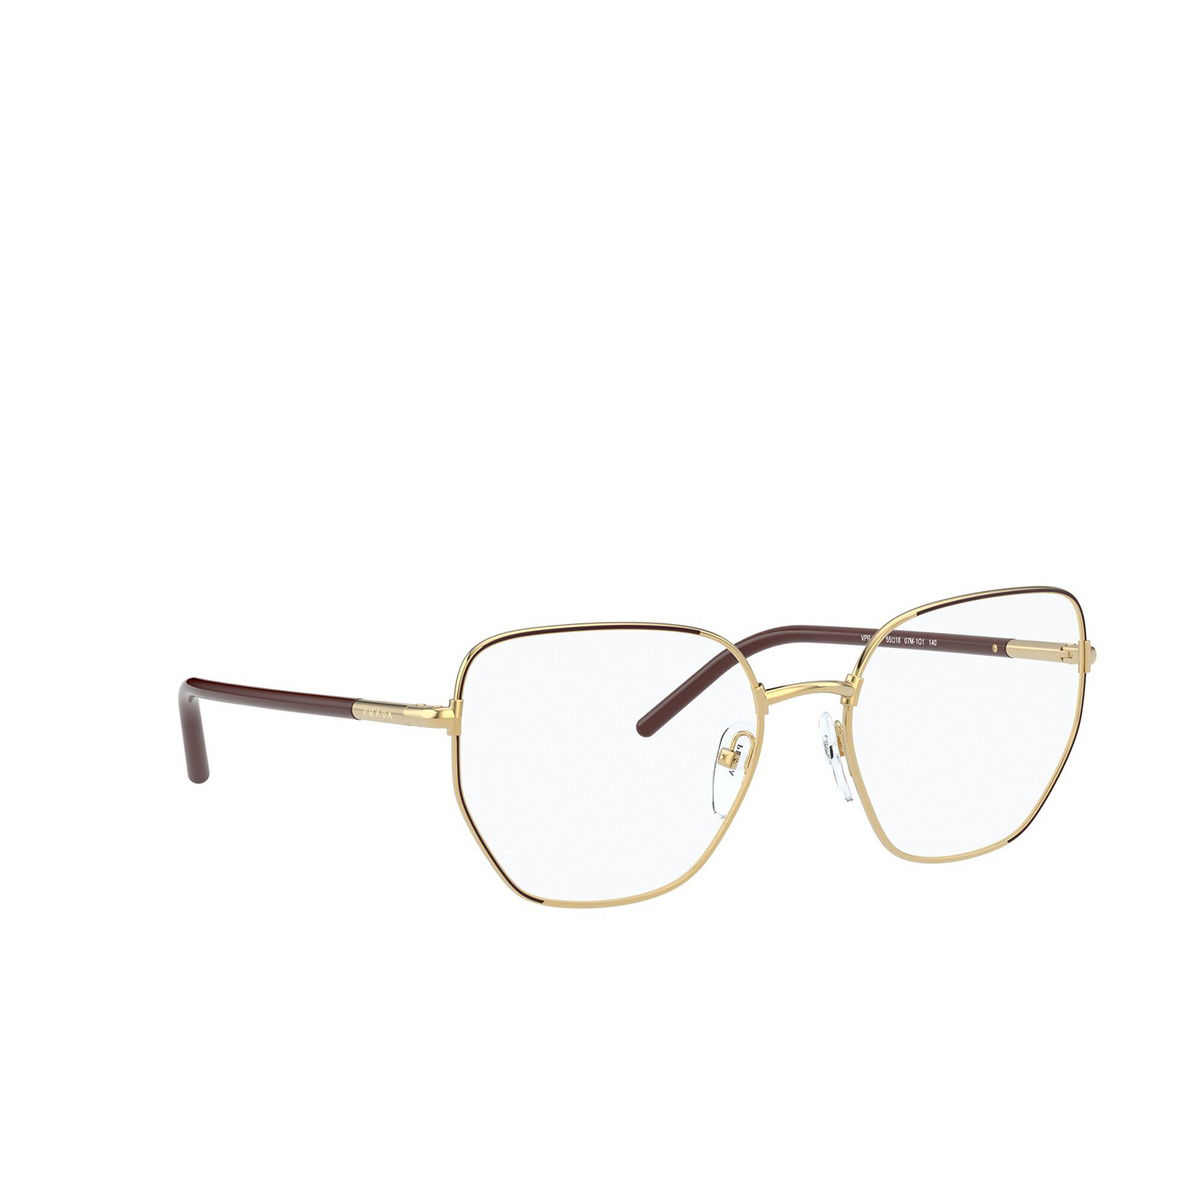 Prada® Irregular Eyeglasses: PR 60WV color Must / Gold 07M1O1 - three-quarters view.